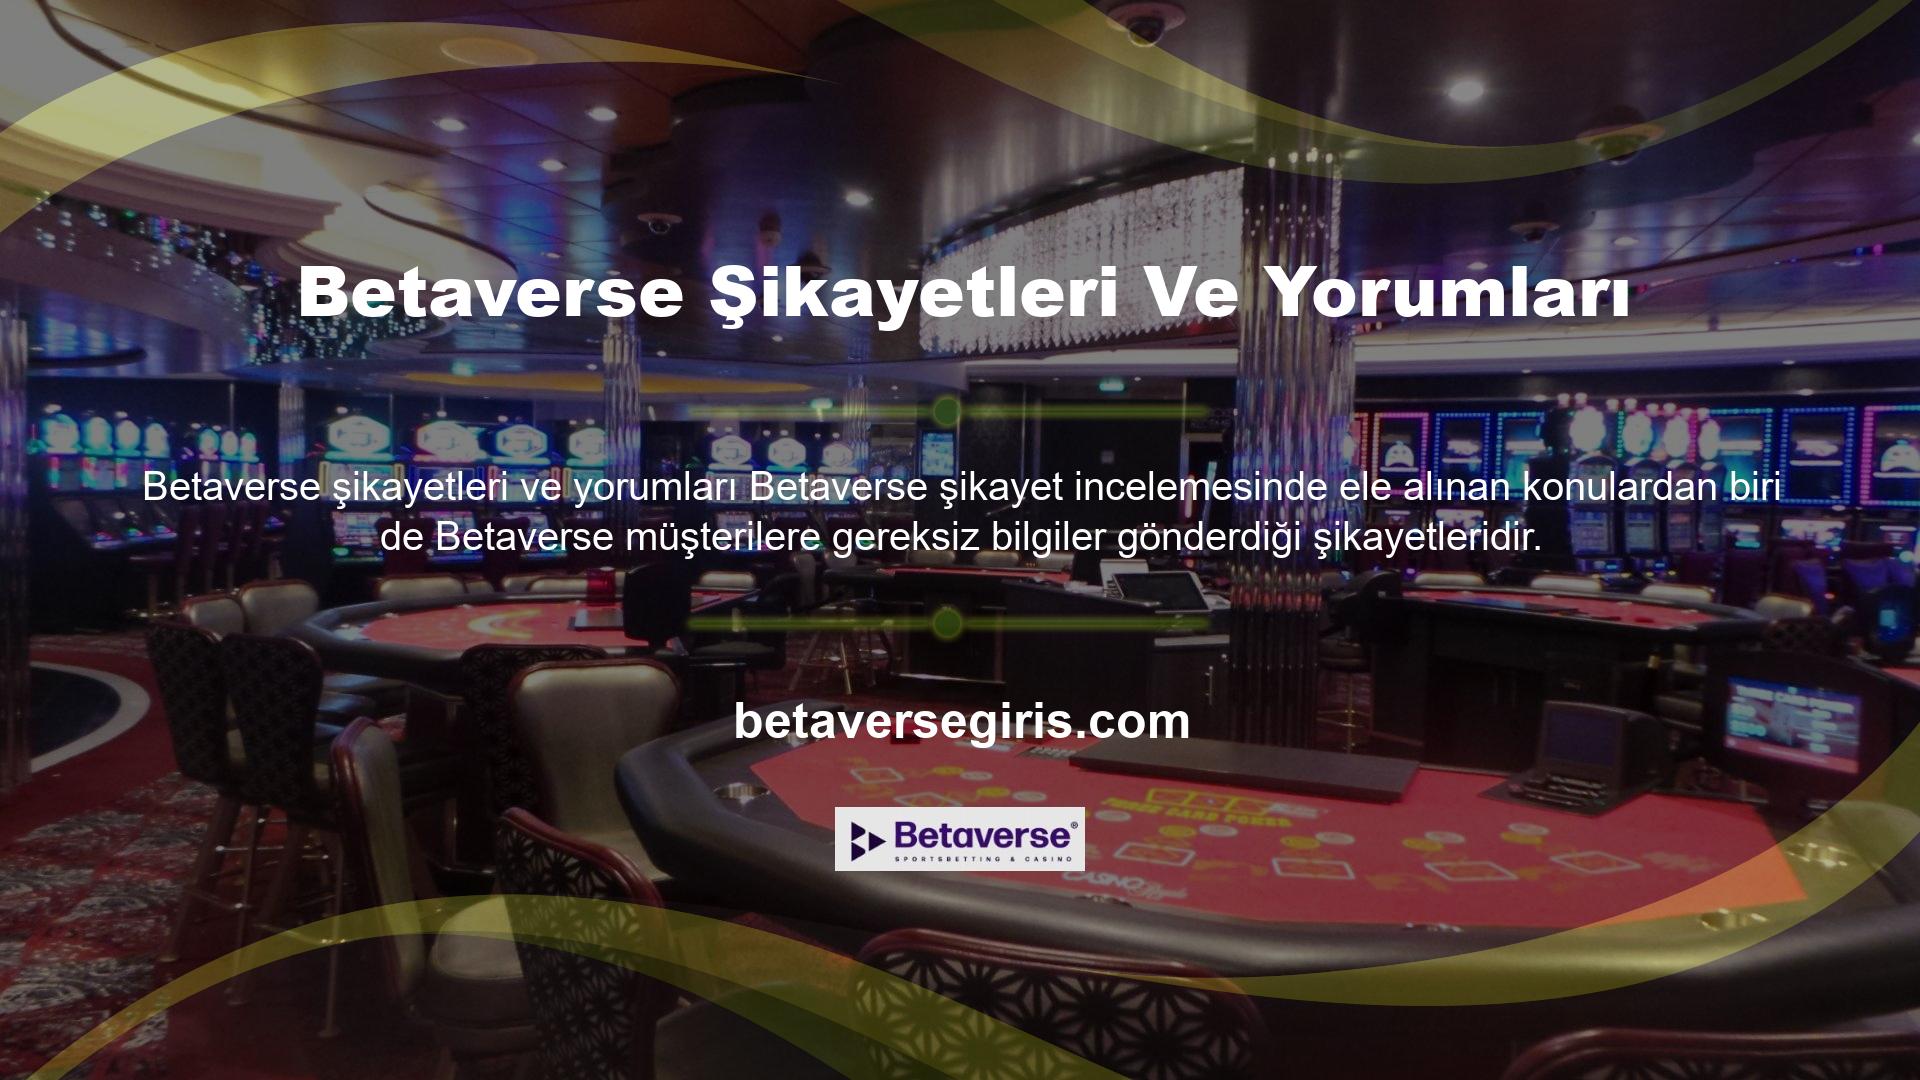 İnteraktif içeriğe önem veren bir site olarak Betaverse, sürekli olarak tüm yeni aktiviteleri, geniş bir bahis yelpazesini, eğlenceli ve kazançlı casino oyunlarını ve en cazip bonus etkinliklerini sayfasında müşterileri ile paylaşmaktadır